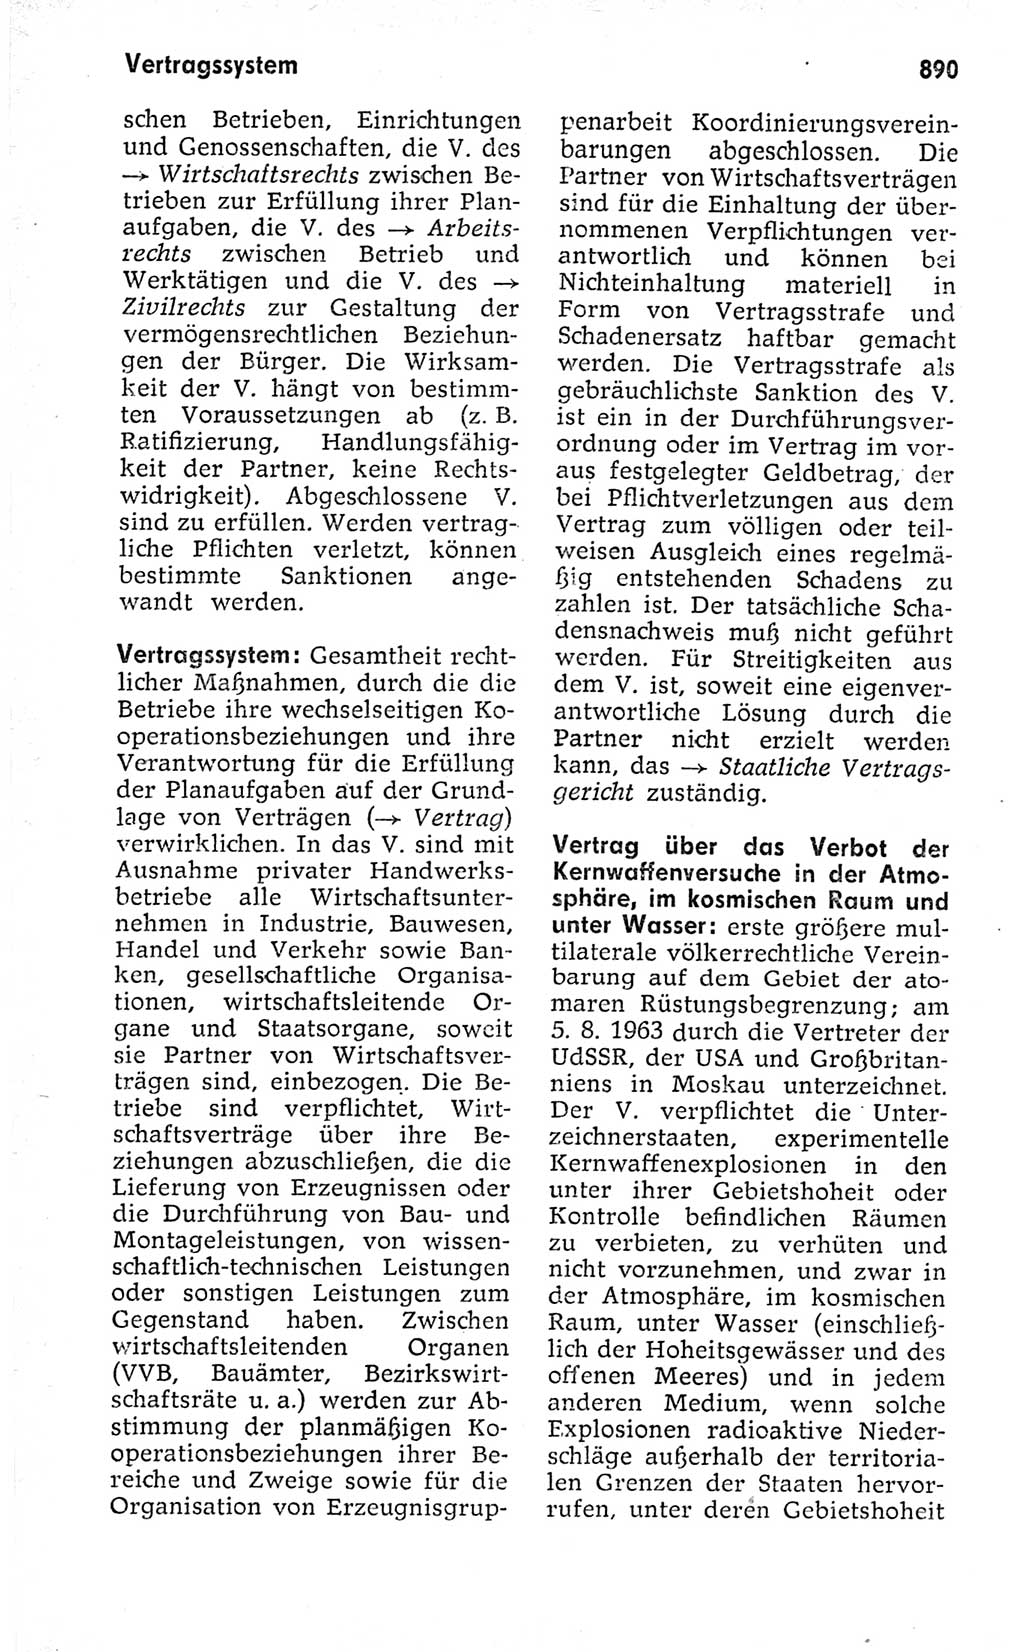 Kleines politisches Wörterbuch [Deutsche Demokratische Republik (DDR)] 1973, Seite 890 (Kl. pol. Wb. DDR 1973, S. 890)